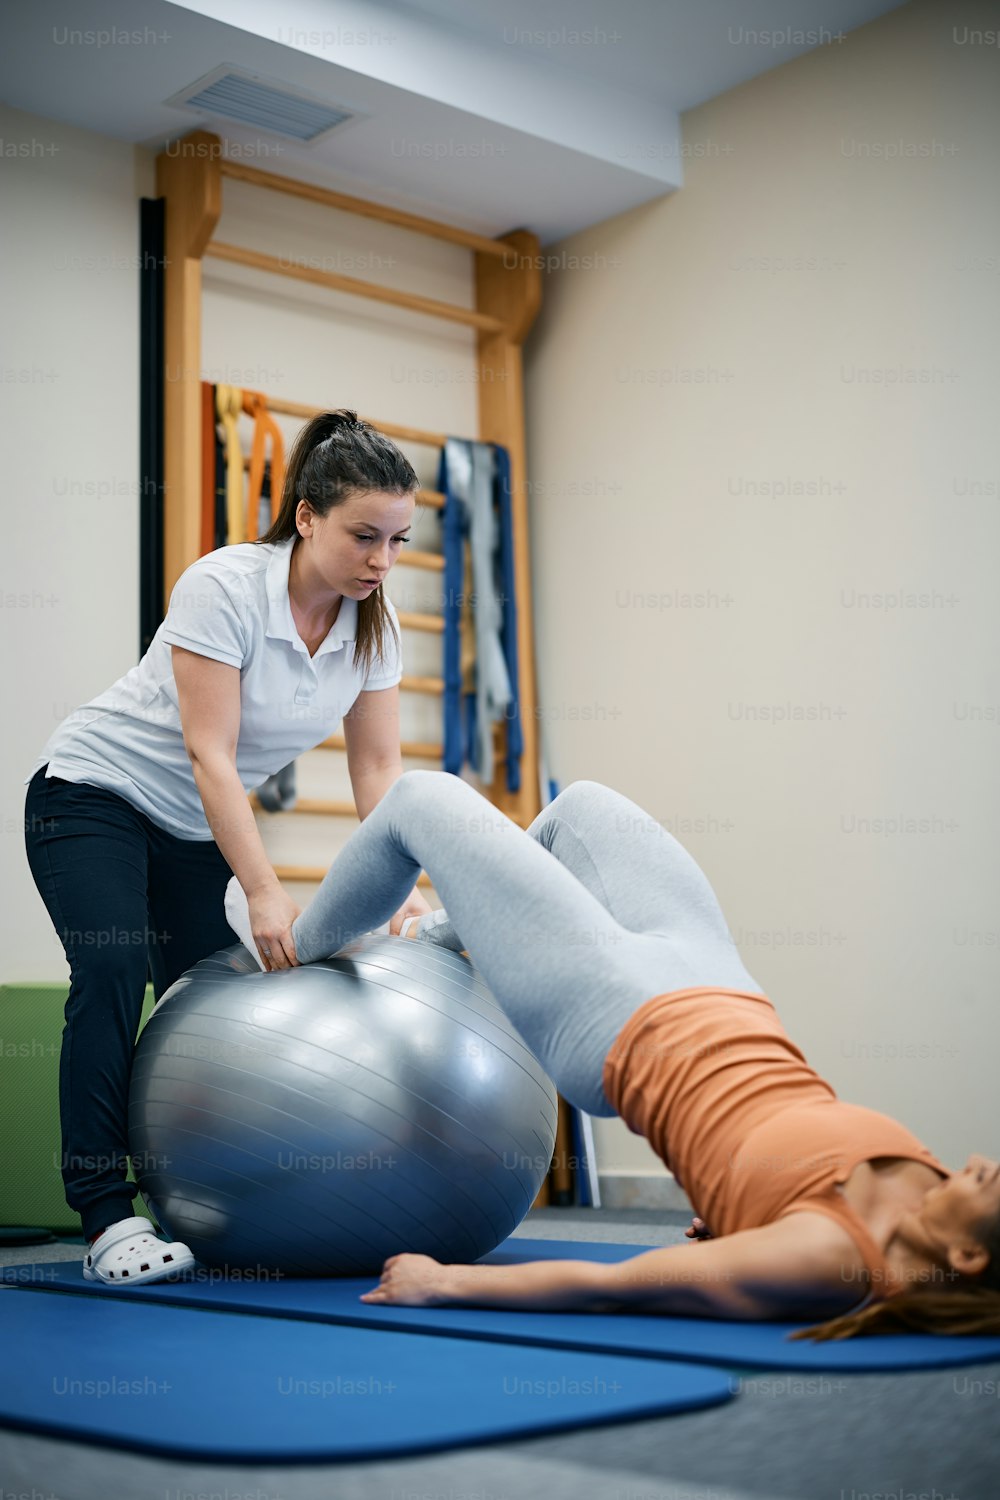 Fisioterapeuta usando pelota de fitness durante el tratamiento terapéutico con una paciente femenina en un club de salud.